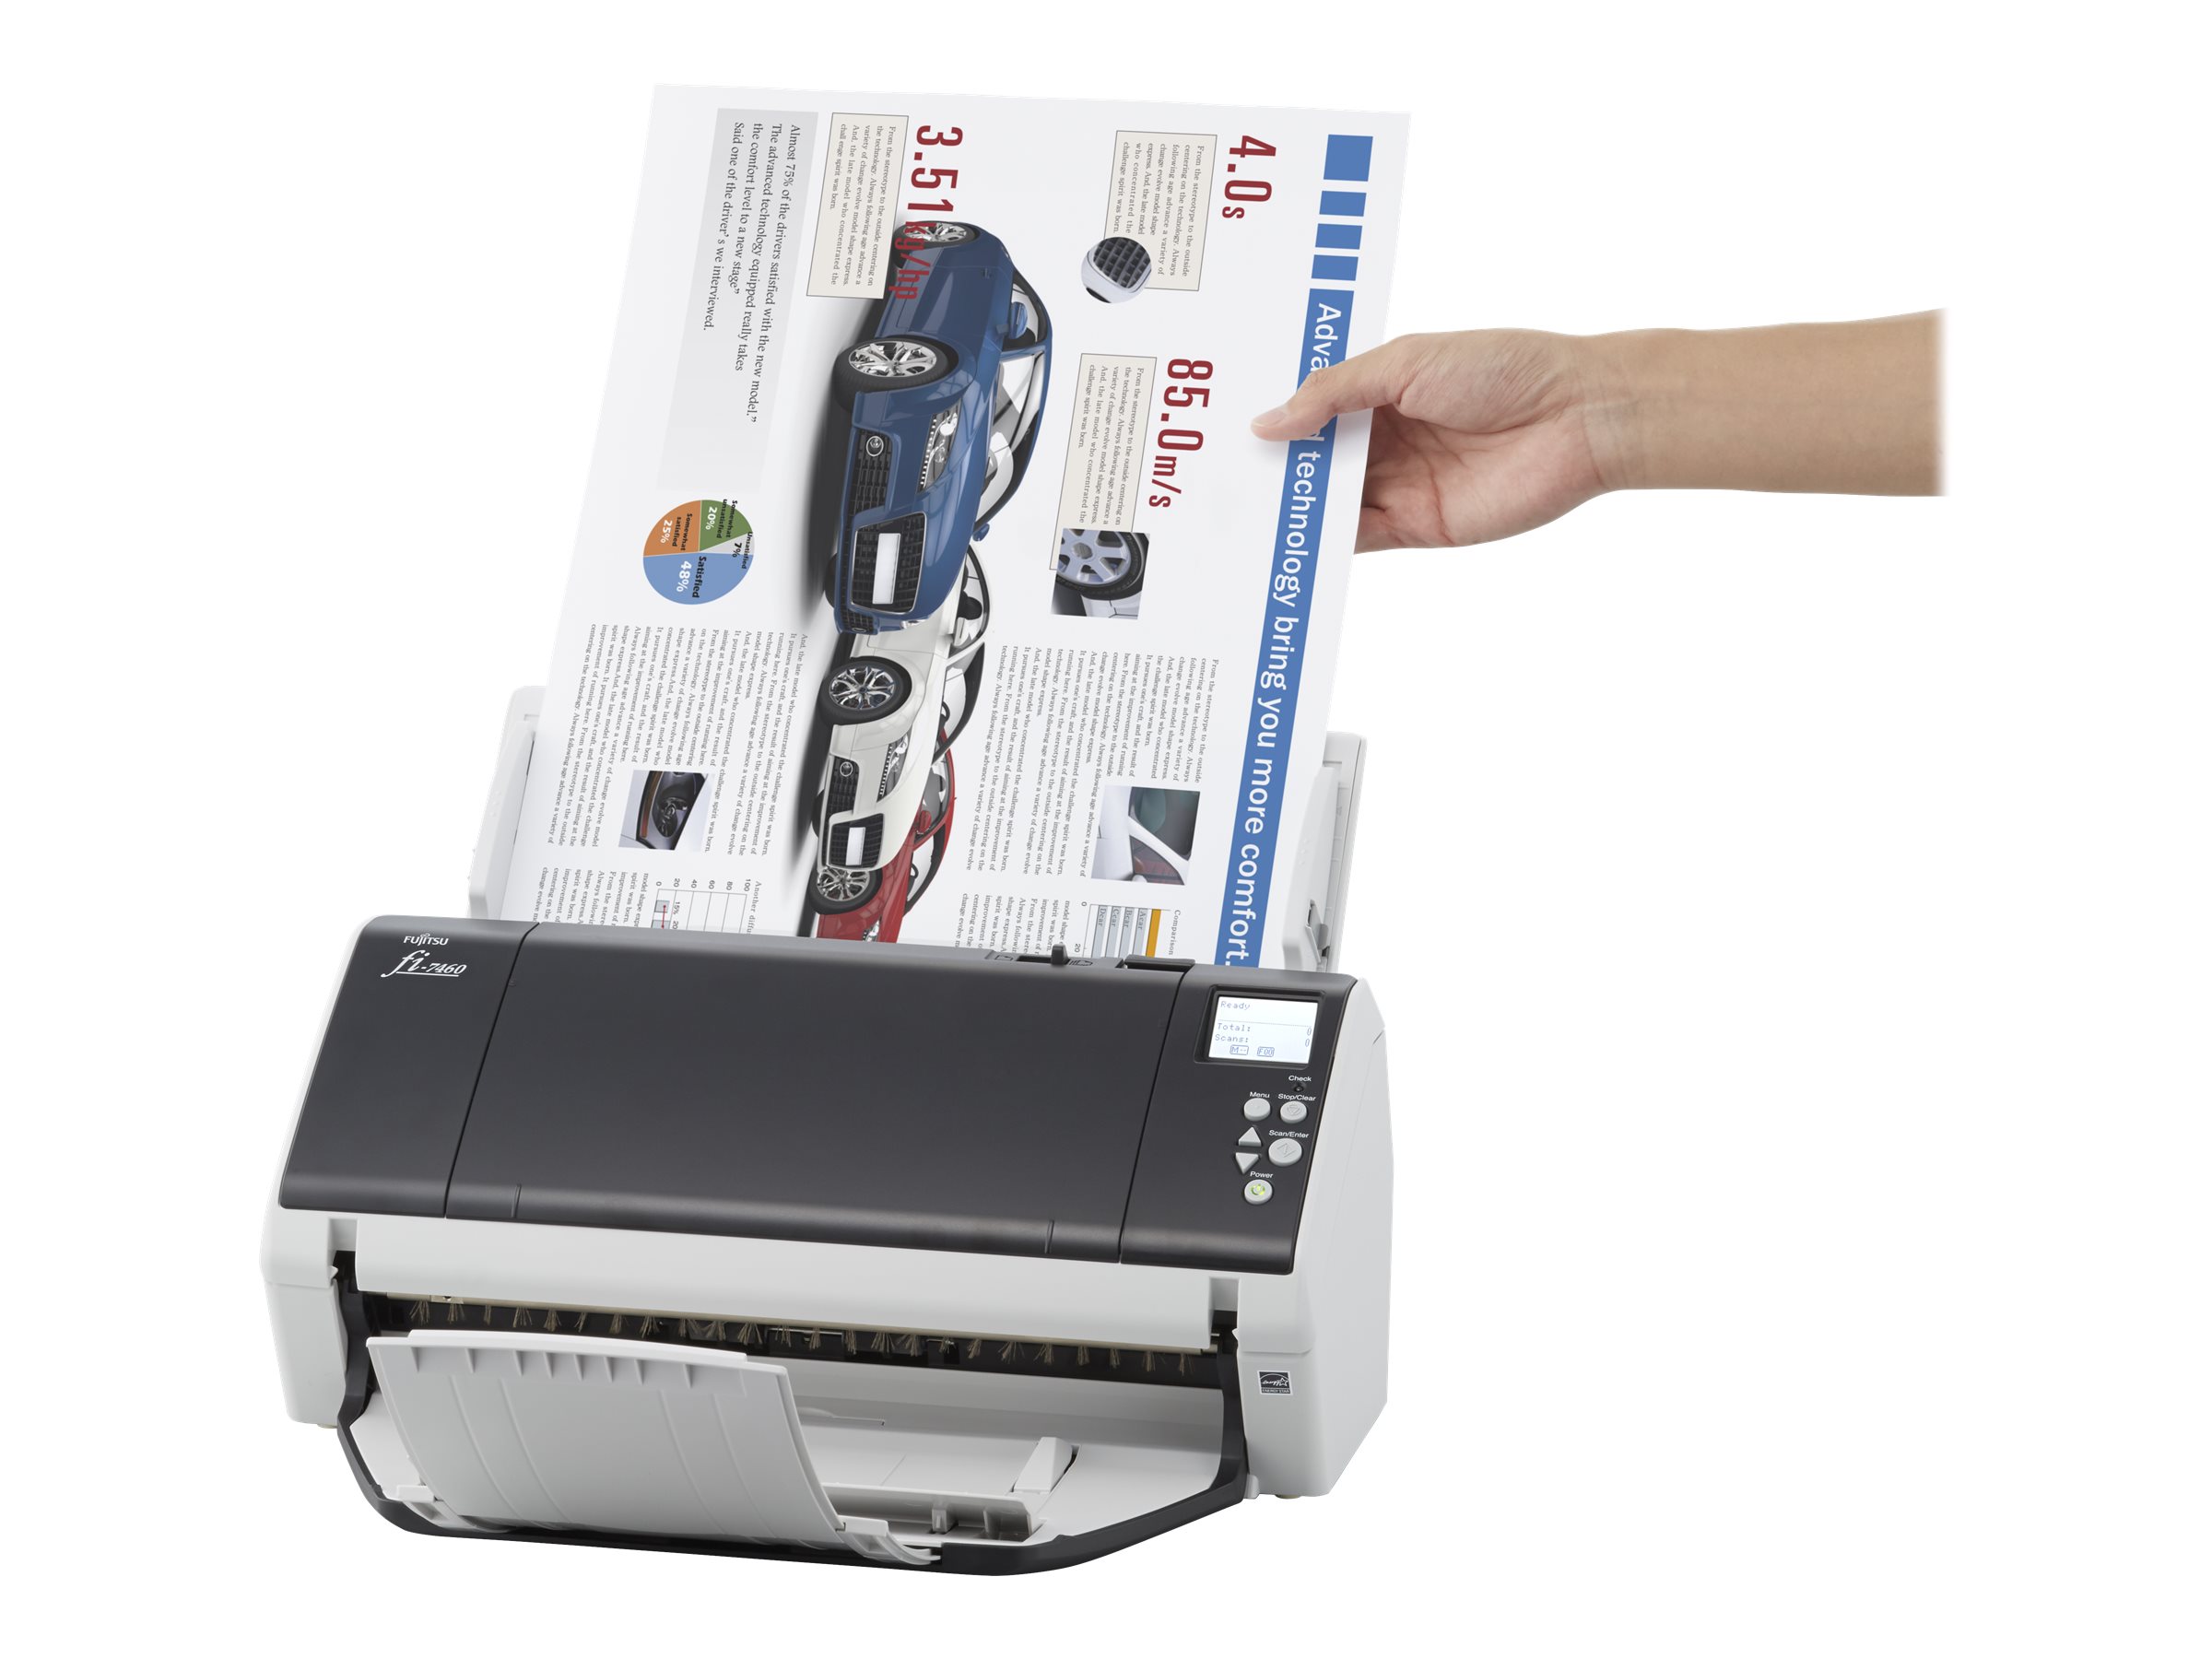 Fujitsu fi-7460 - Dokumentenscanner - Duplex - 304.8 x 431.8 mm - 600 dpi x 600 dpi - bis zu 60 Seiten/Min. (einfarbig)